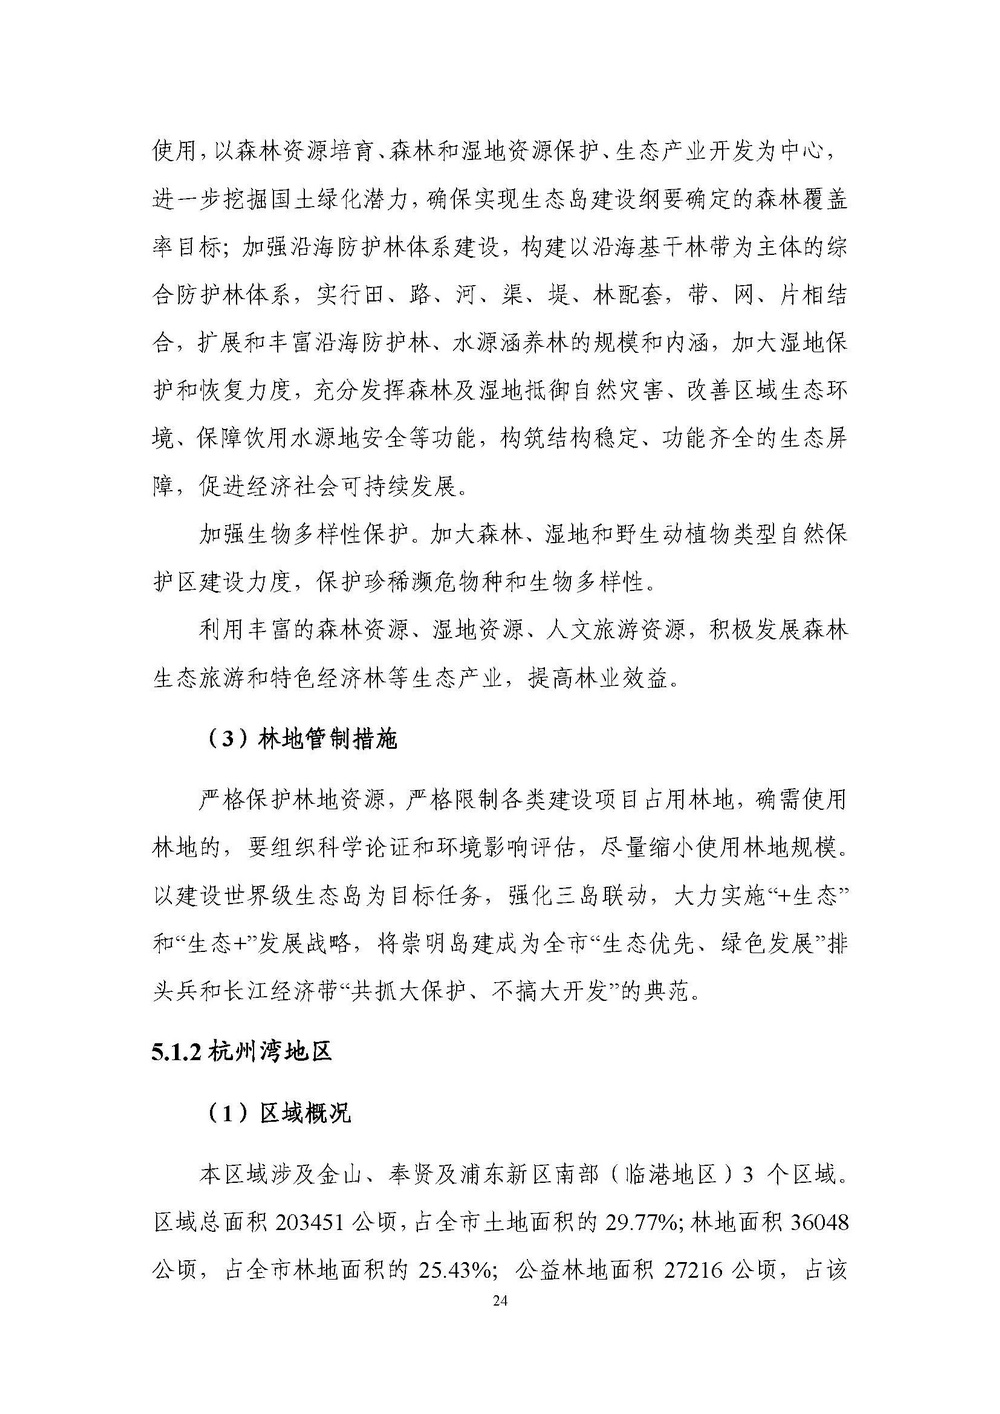 上海市森林和林地保护利用规划文本 公开稿 附图_页面_27.jpg